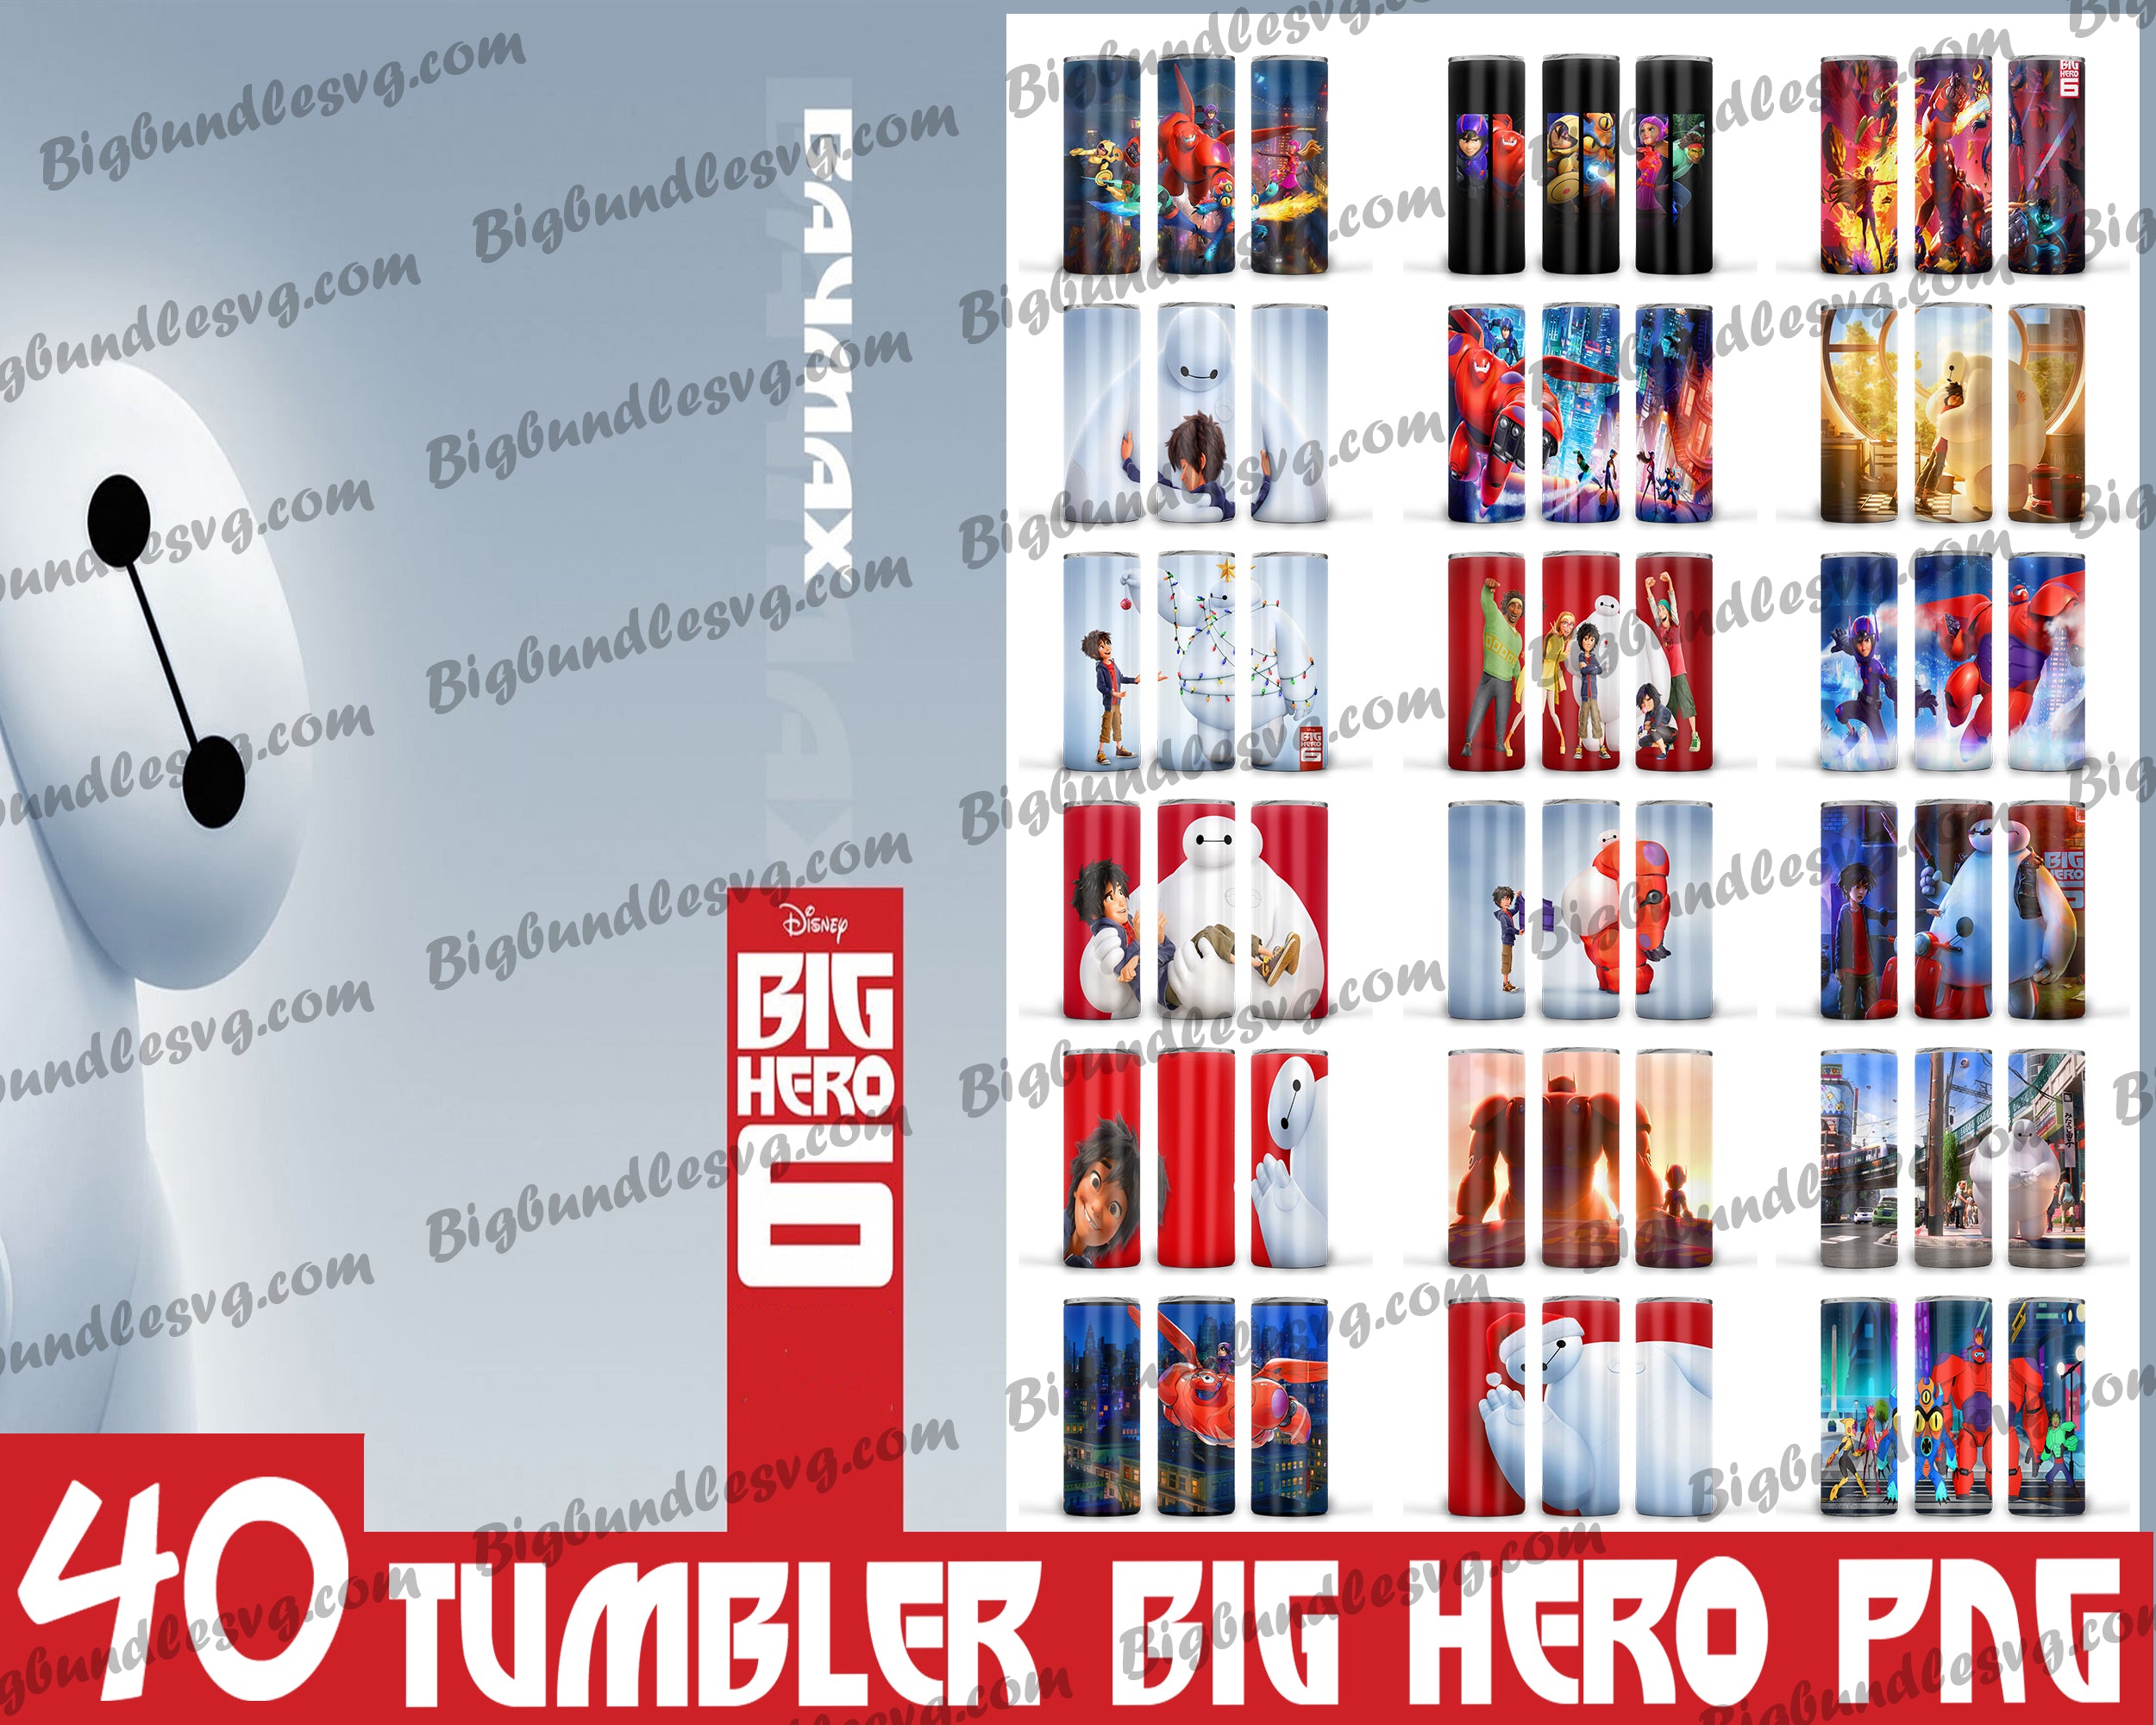 Big Hero Tumbler - Big Hero 6 PNG - Tumbler design - Digital download